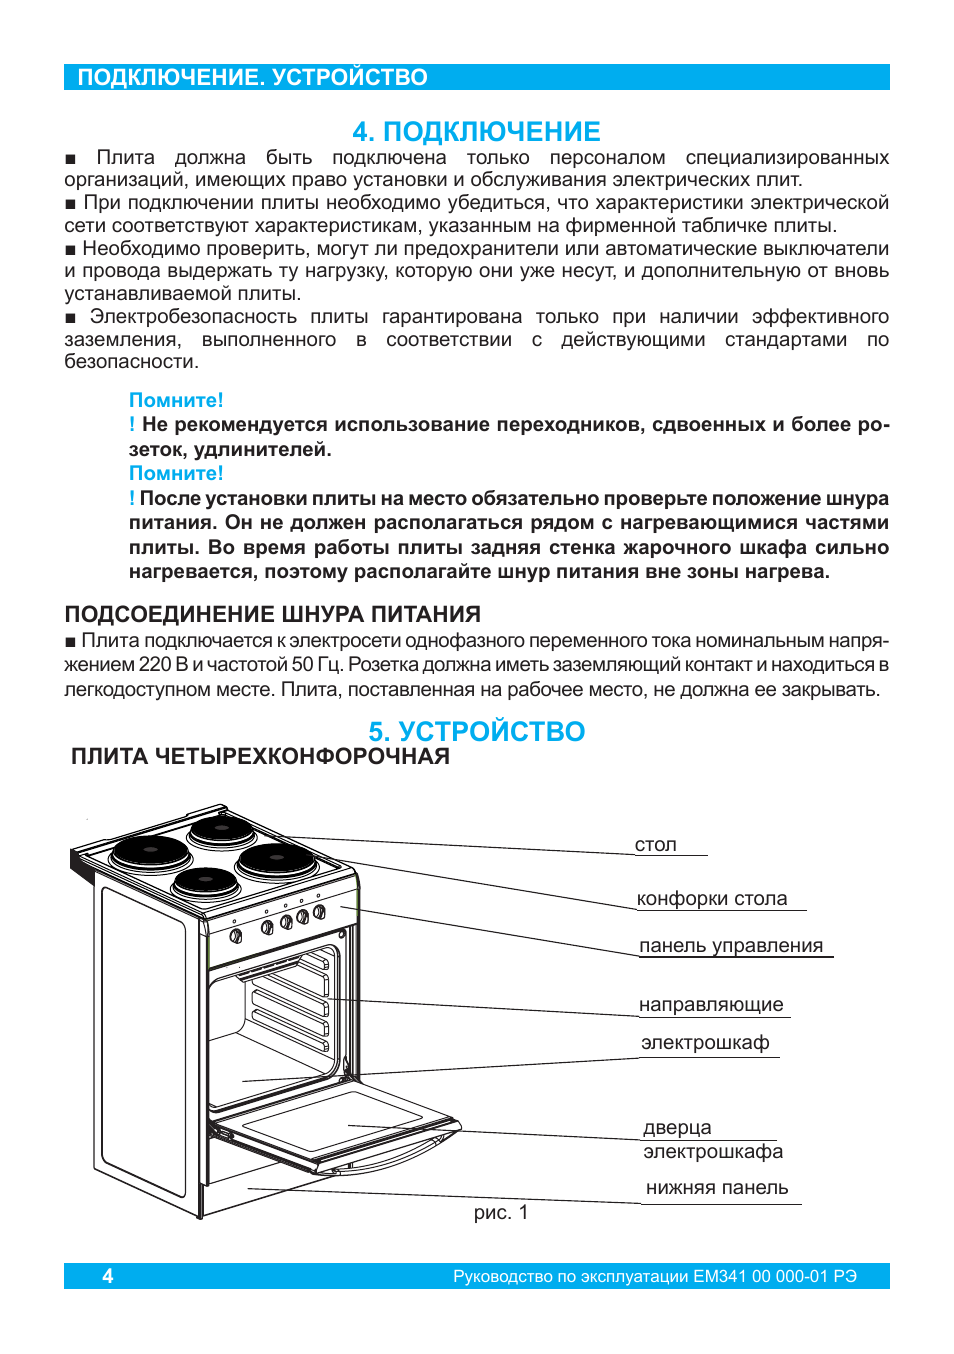 Плита инструкция по эксплуатации духовка электрическая. Электроплита Darina em341 404 электрическая схема.